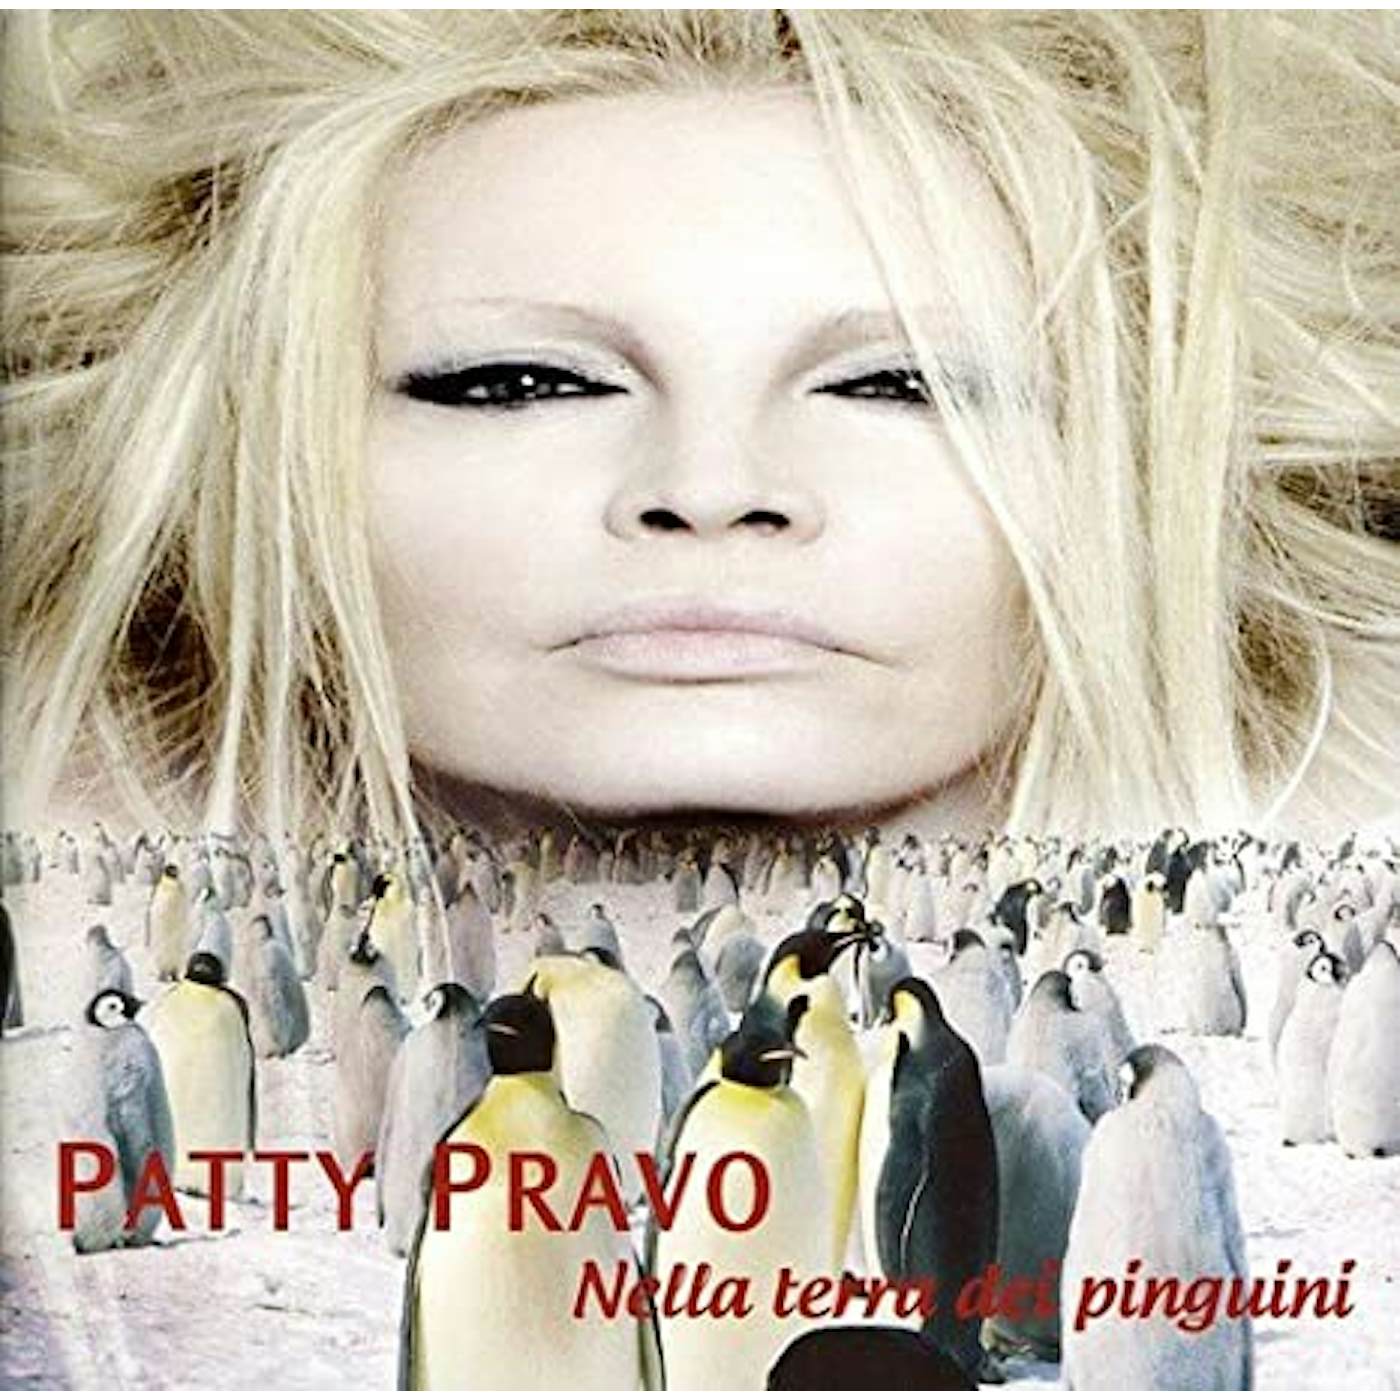 Patty Pravo Nella terra dei pinguini Vinyl Record